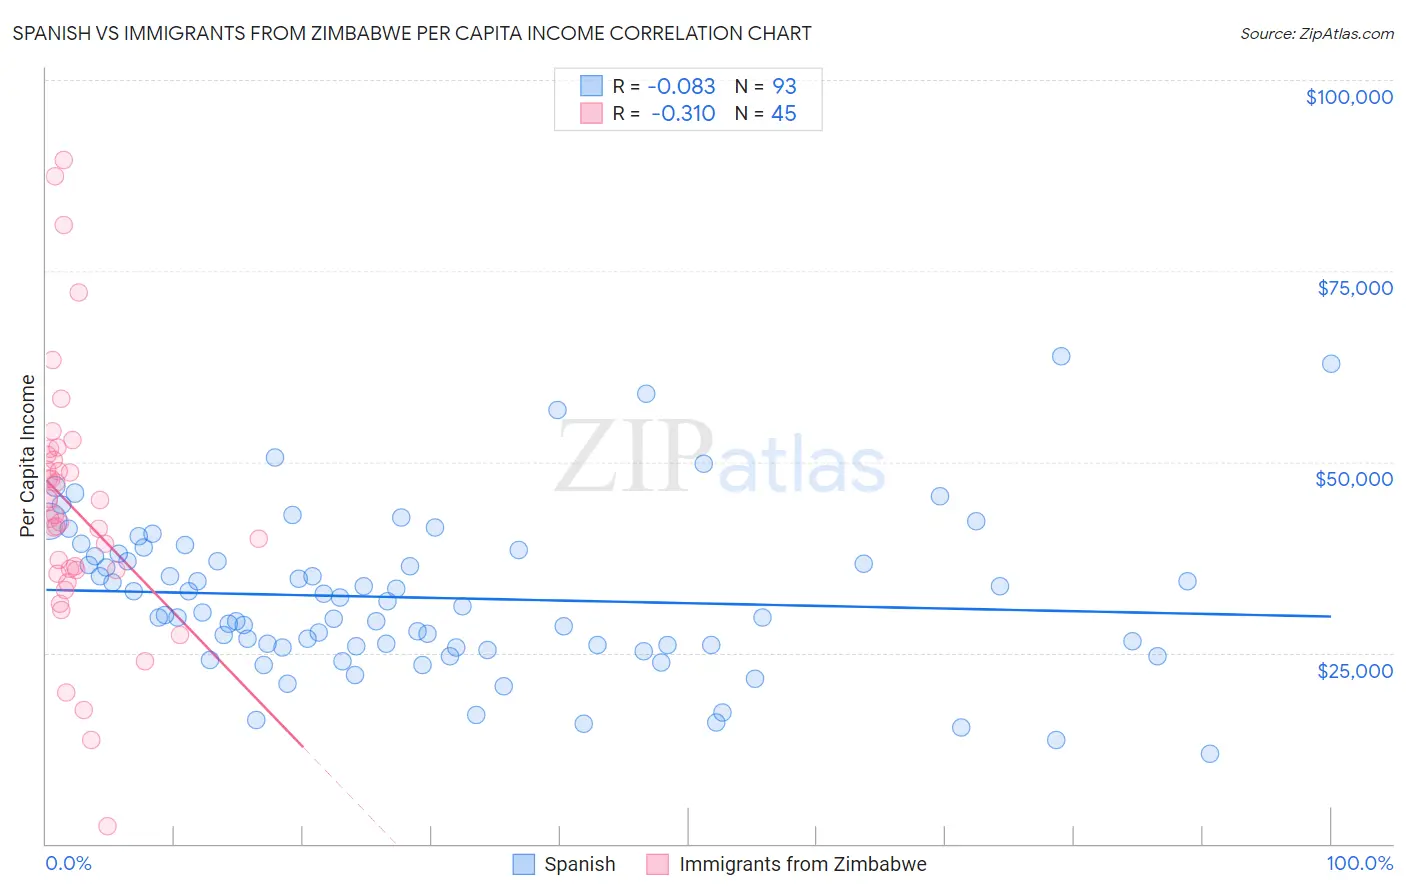 Spanish vs Immigrants from Zimbabwe Per Capita Income